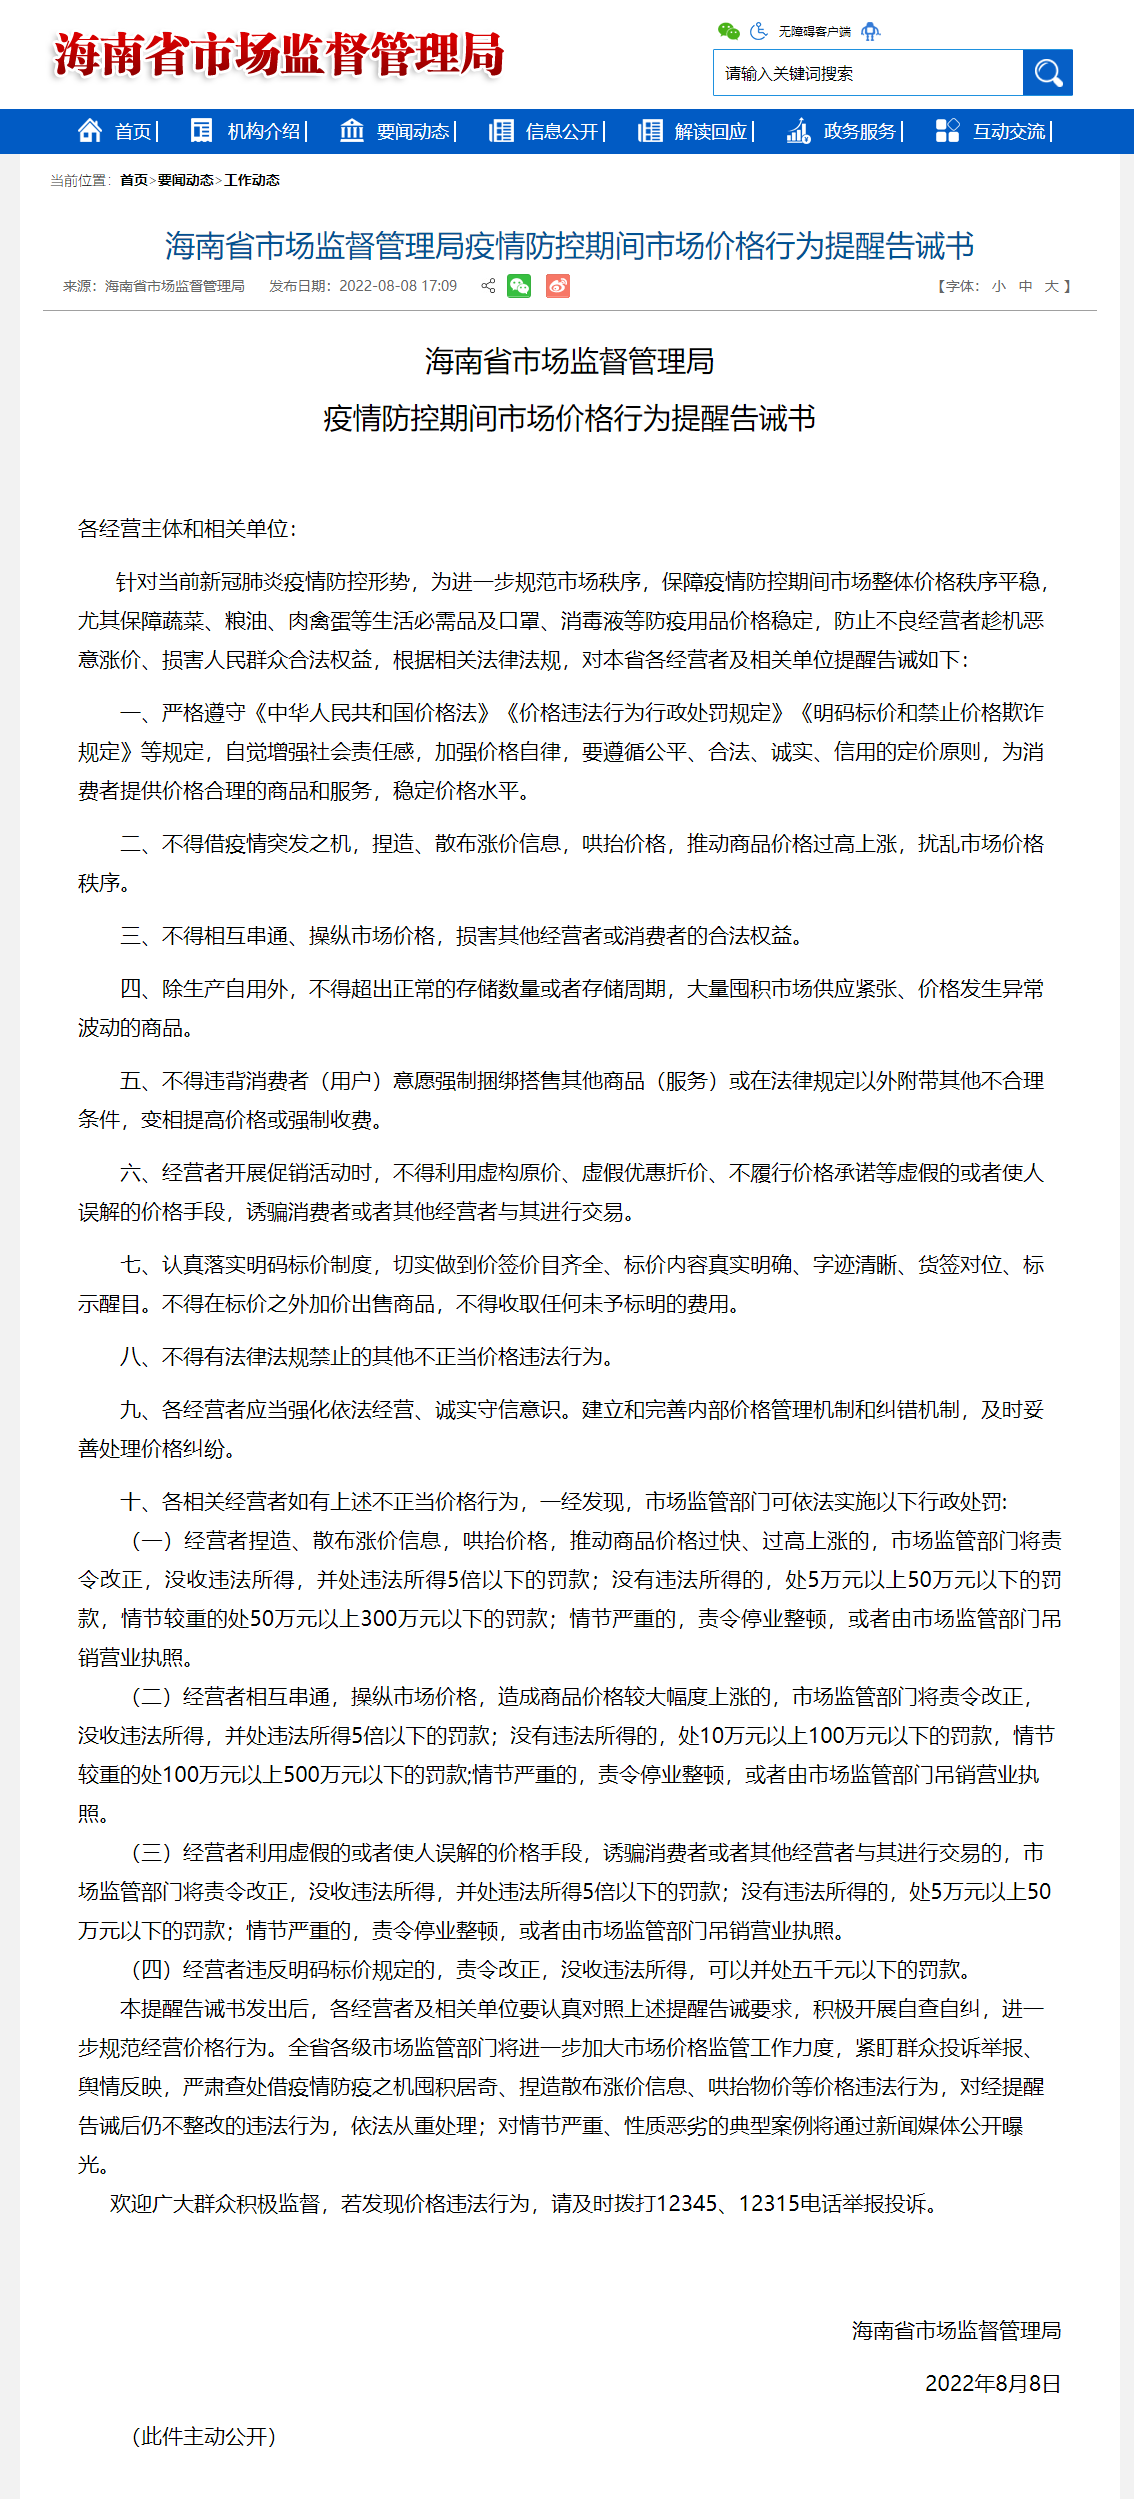 海南省市场监督管理局发布疫情防控期间市场价格行为提醒告诫书